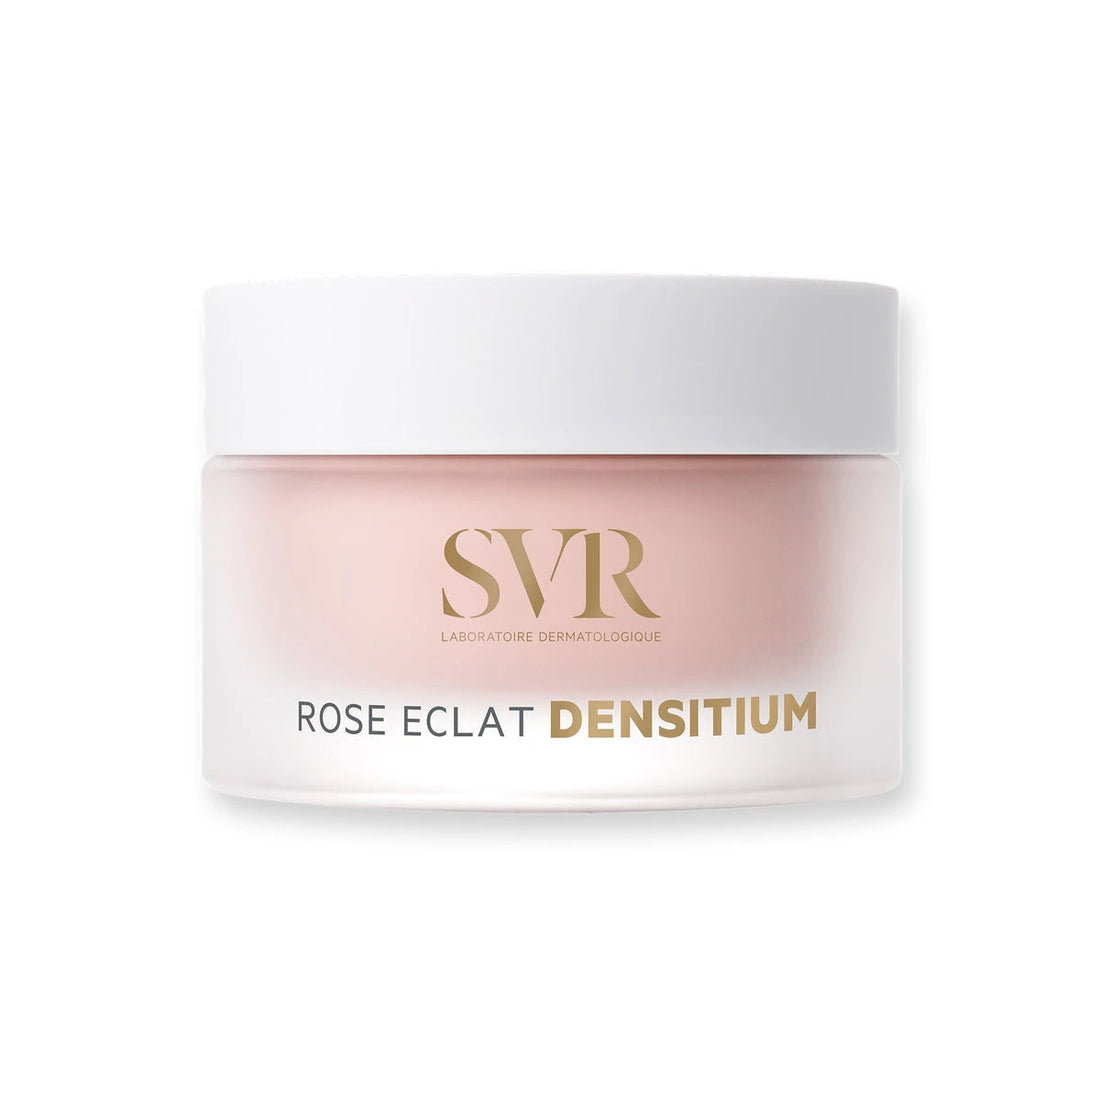 SVR Densitium Rose eclat crema 50ml